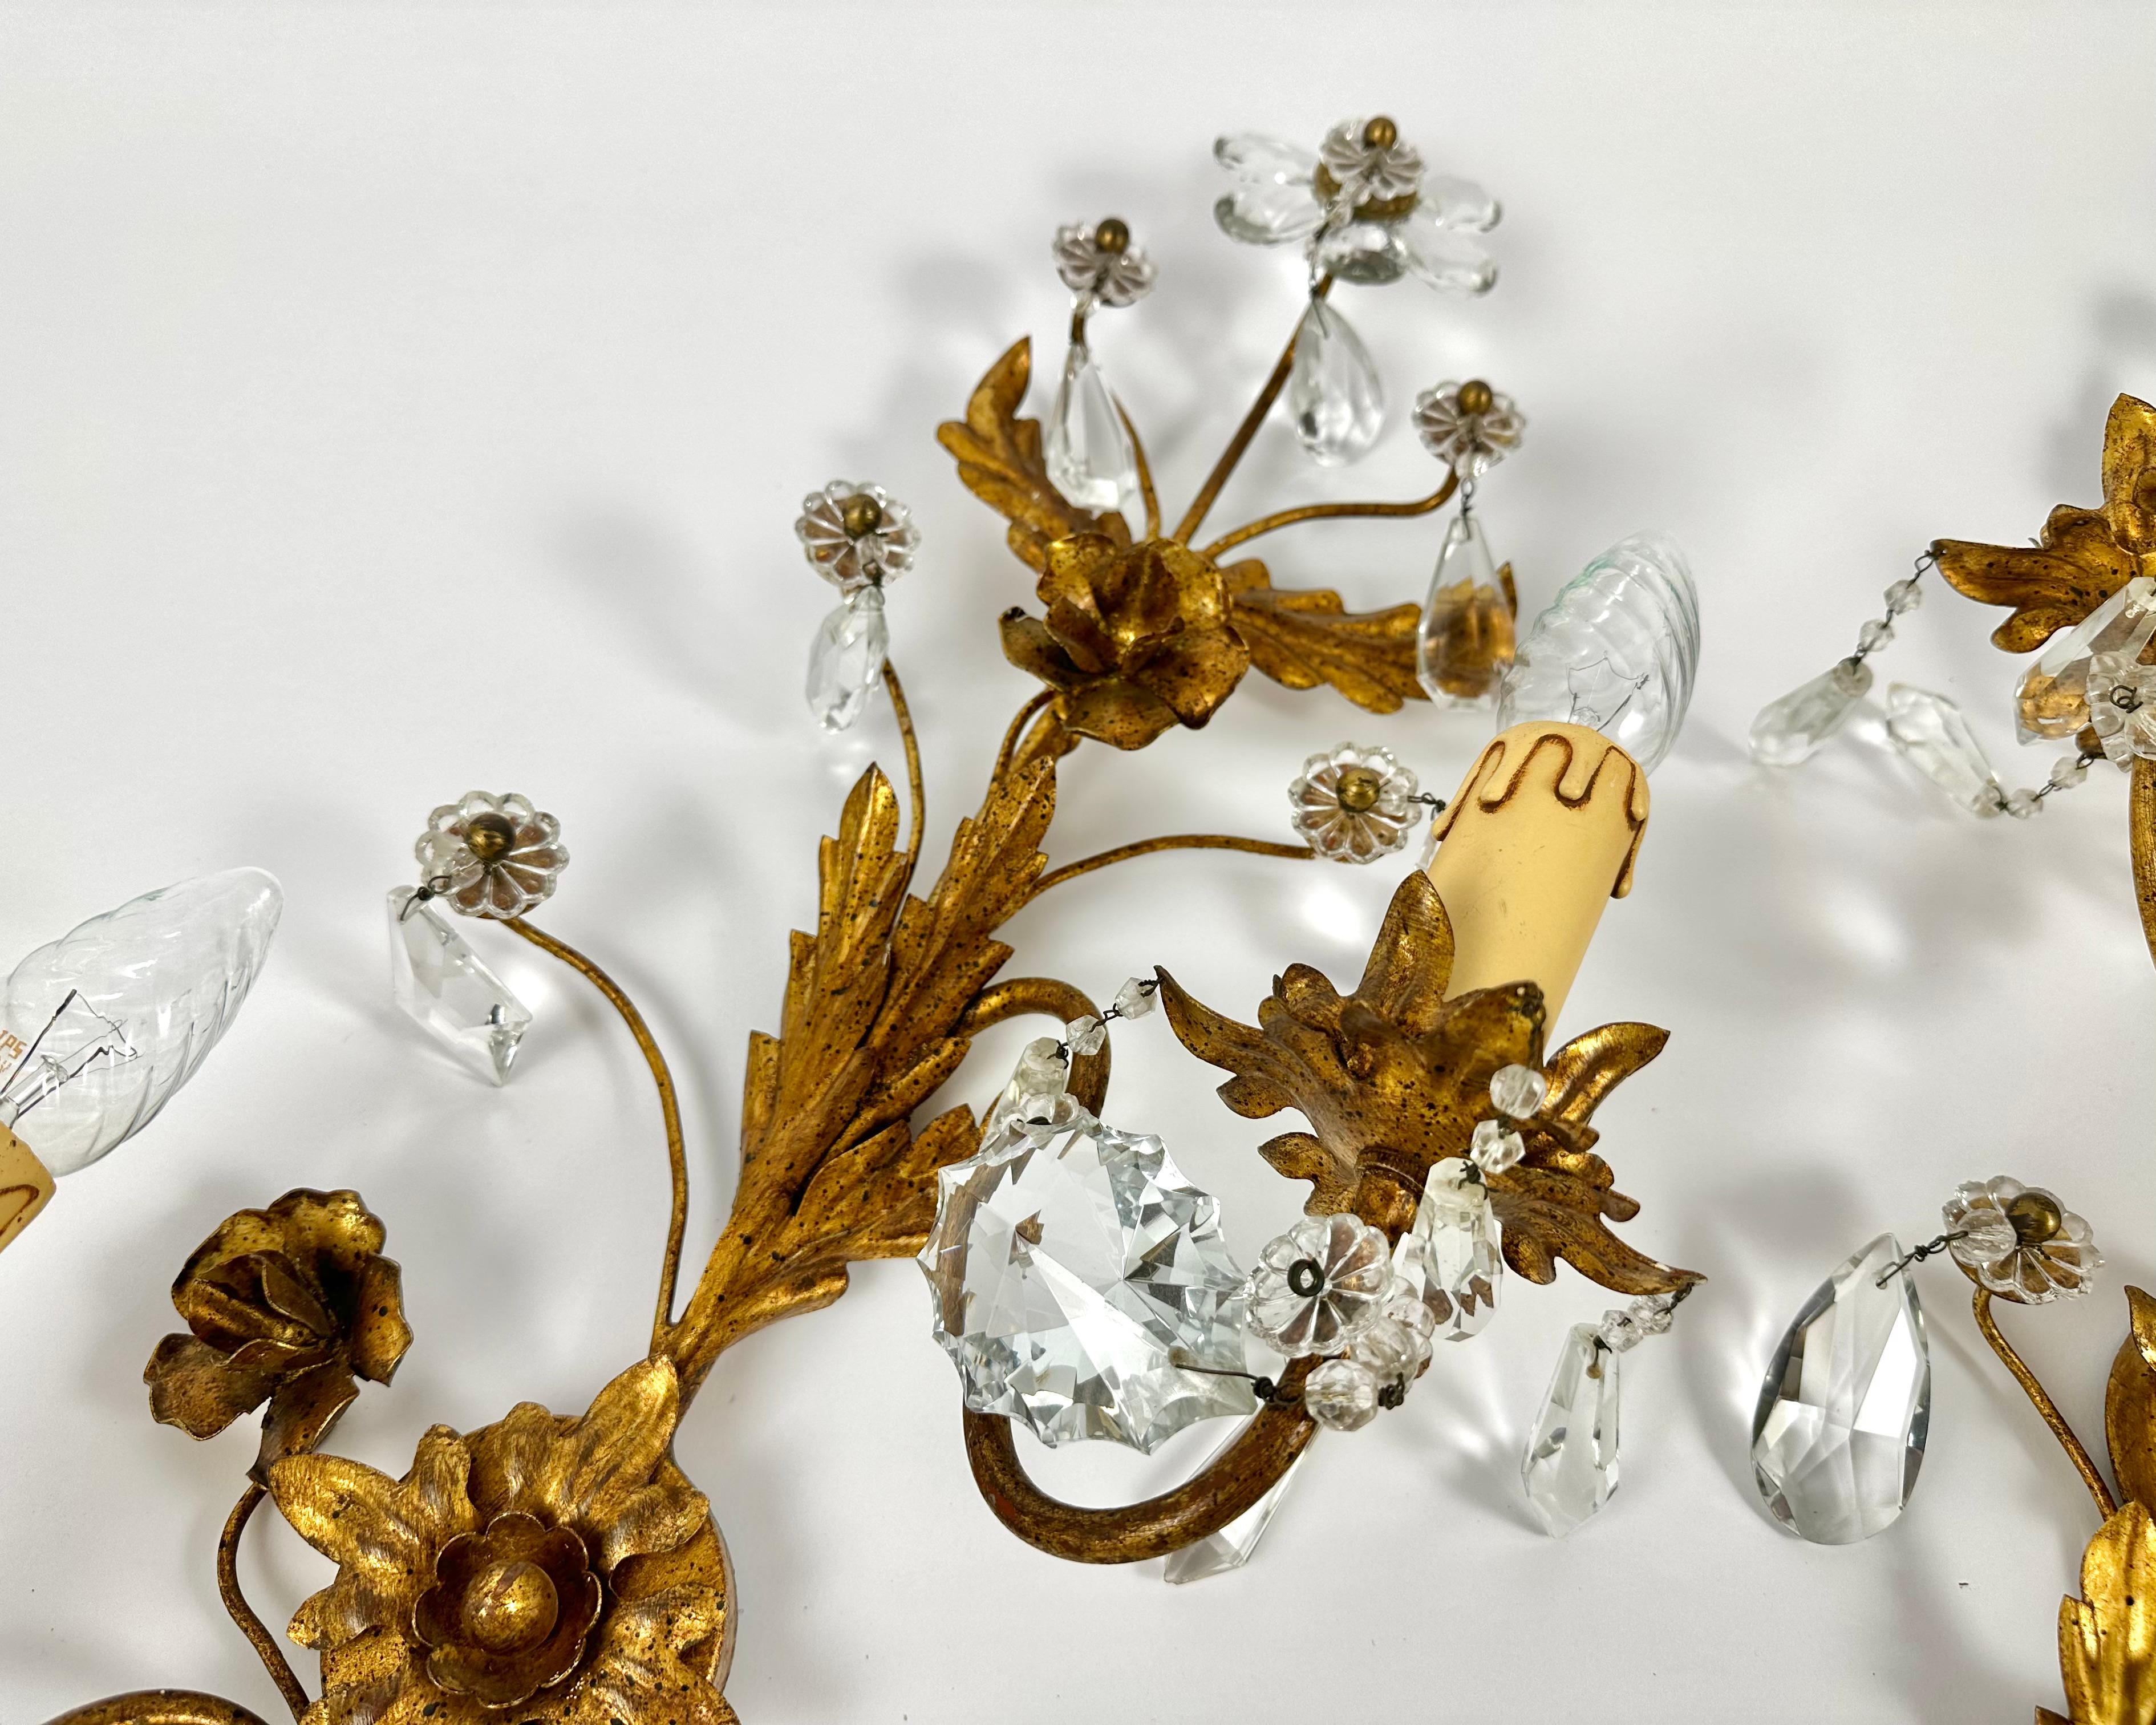 Wunderschöne große Florentine-Leuchter aus den 1950er Jahren mit jeweils zwei Sockeln, die mit Gänseblümchen aus Kristall und goldenen geschwungenen Blättern verziert sind.

Hergestellt in Italien.

Sehr schönes Design mit vielen Details und hoher